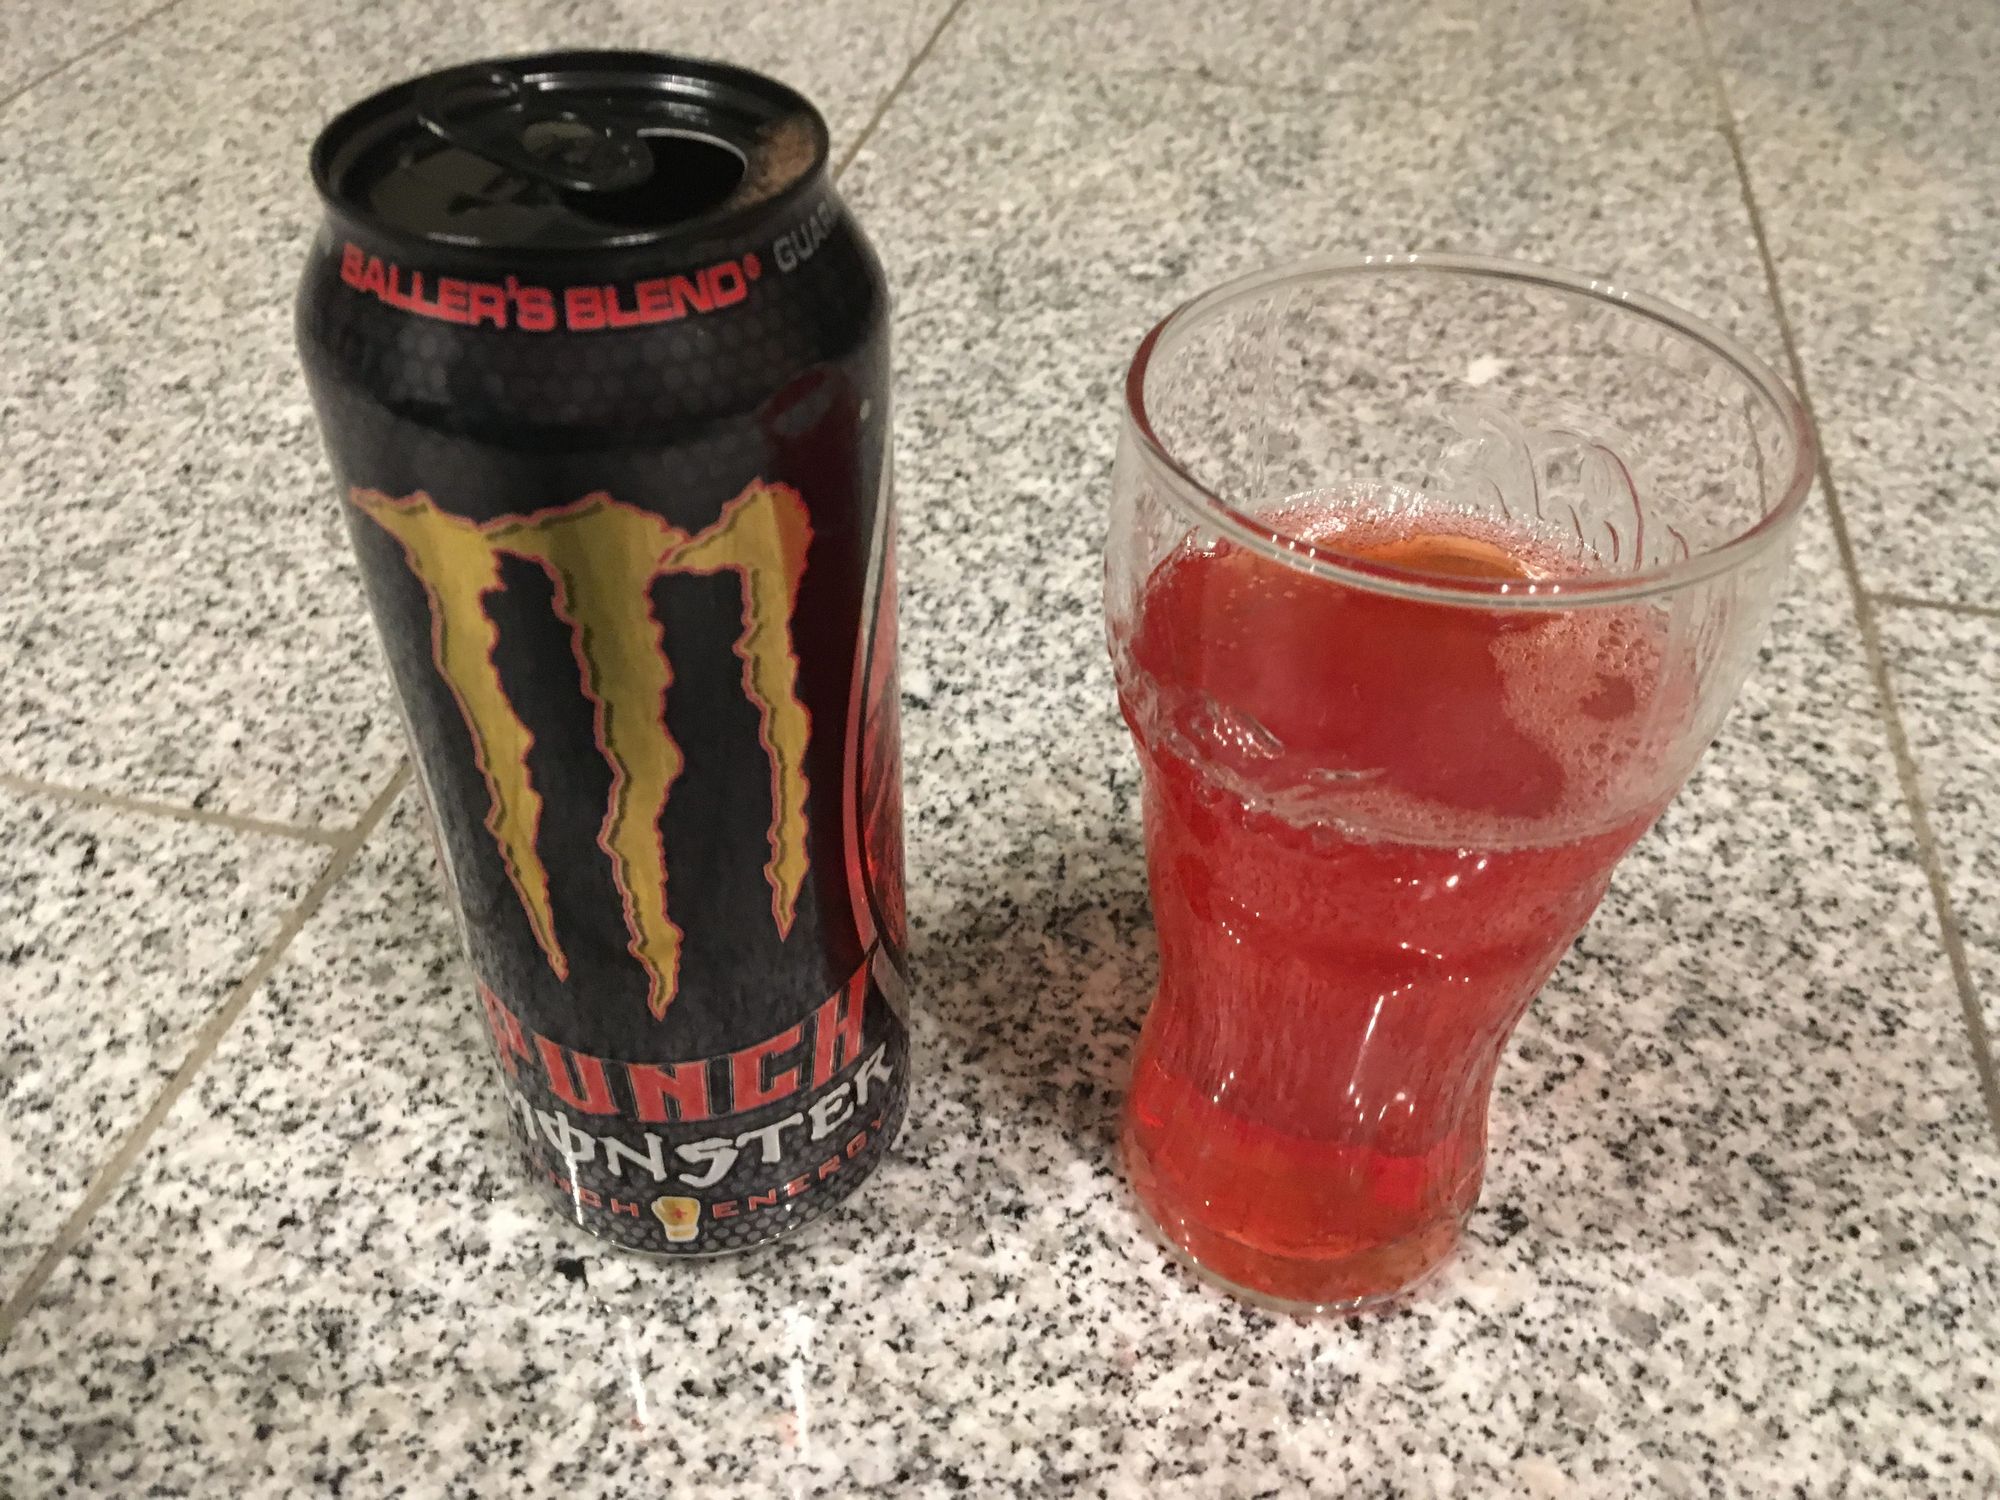 Monster Punch Baller’s Blend